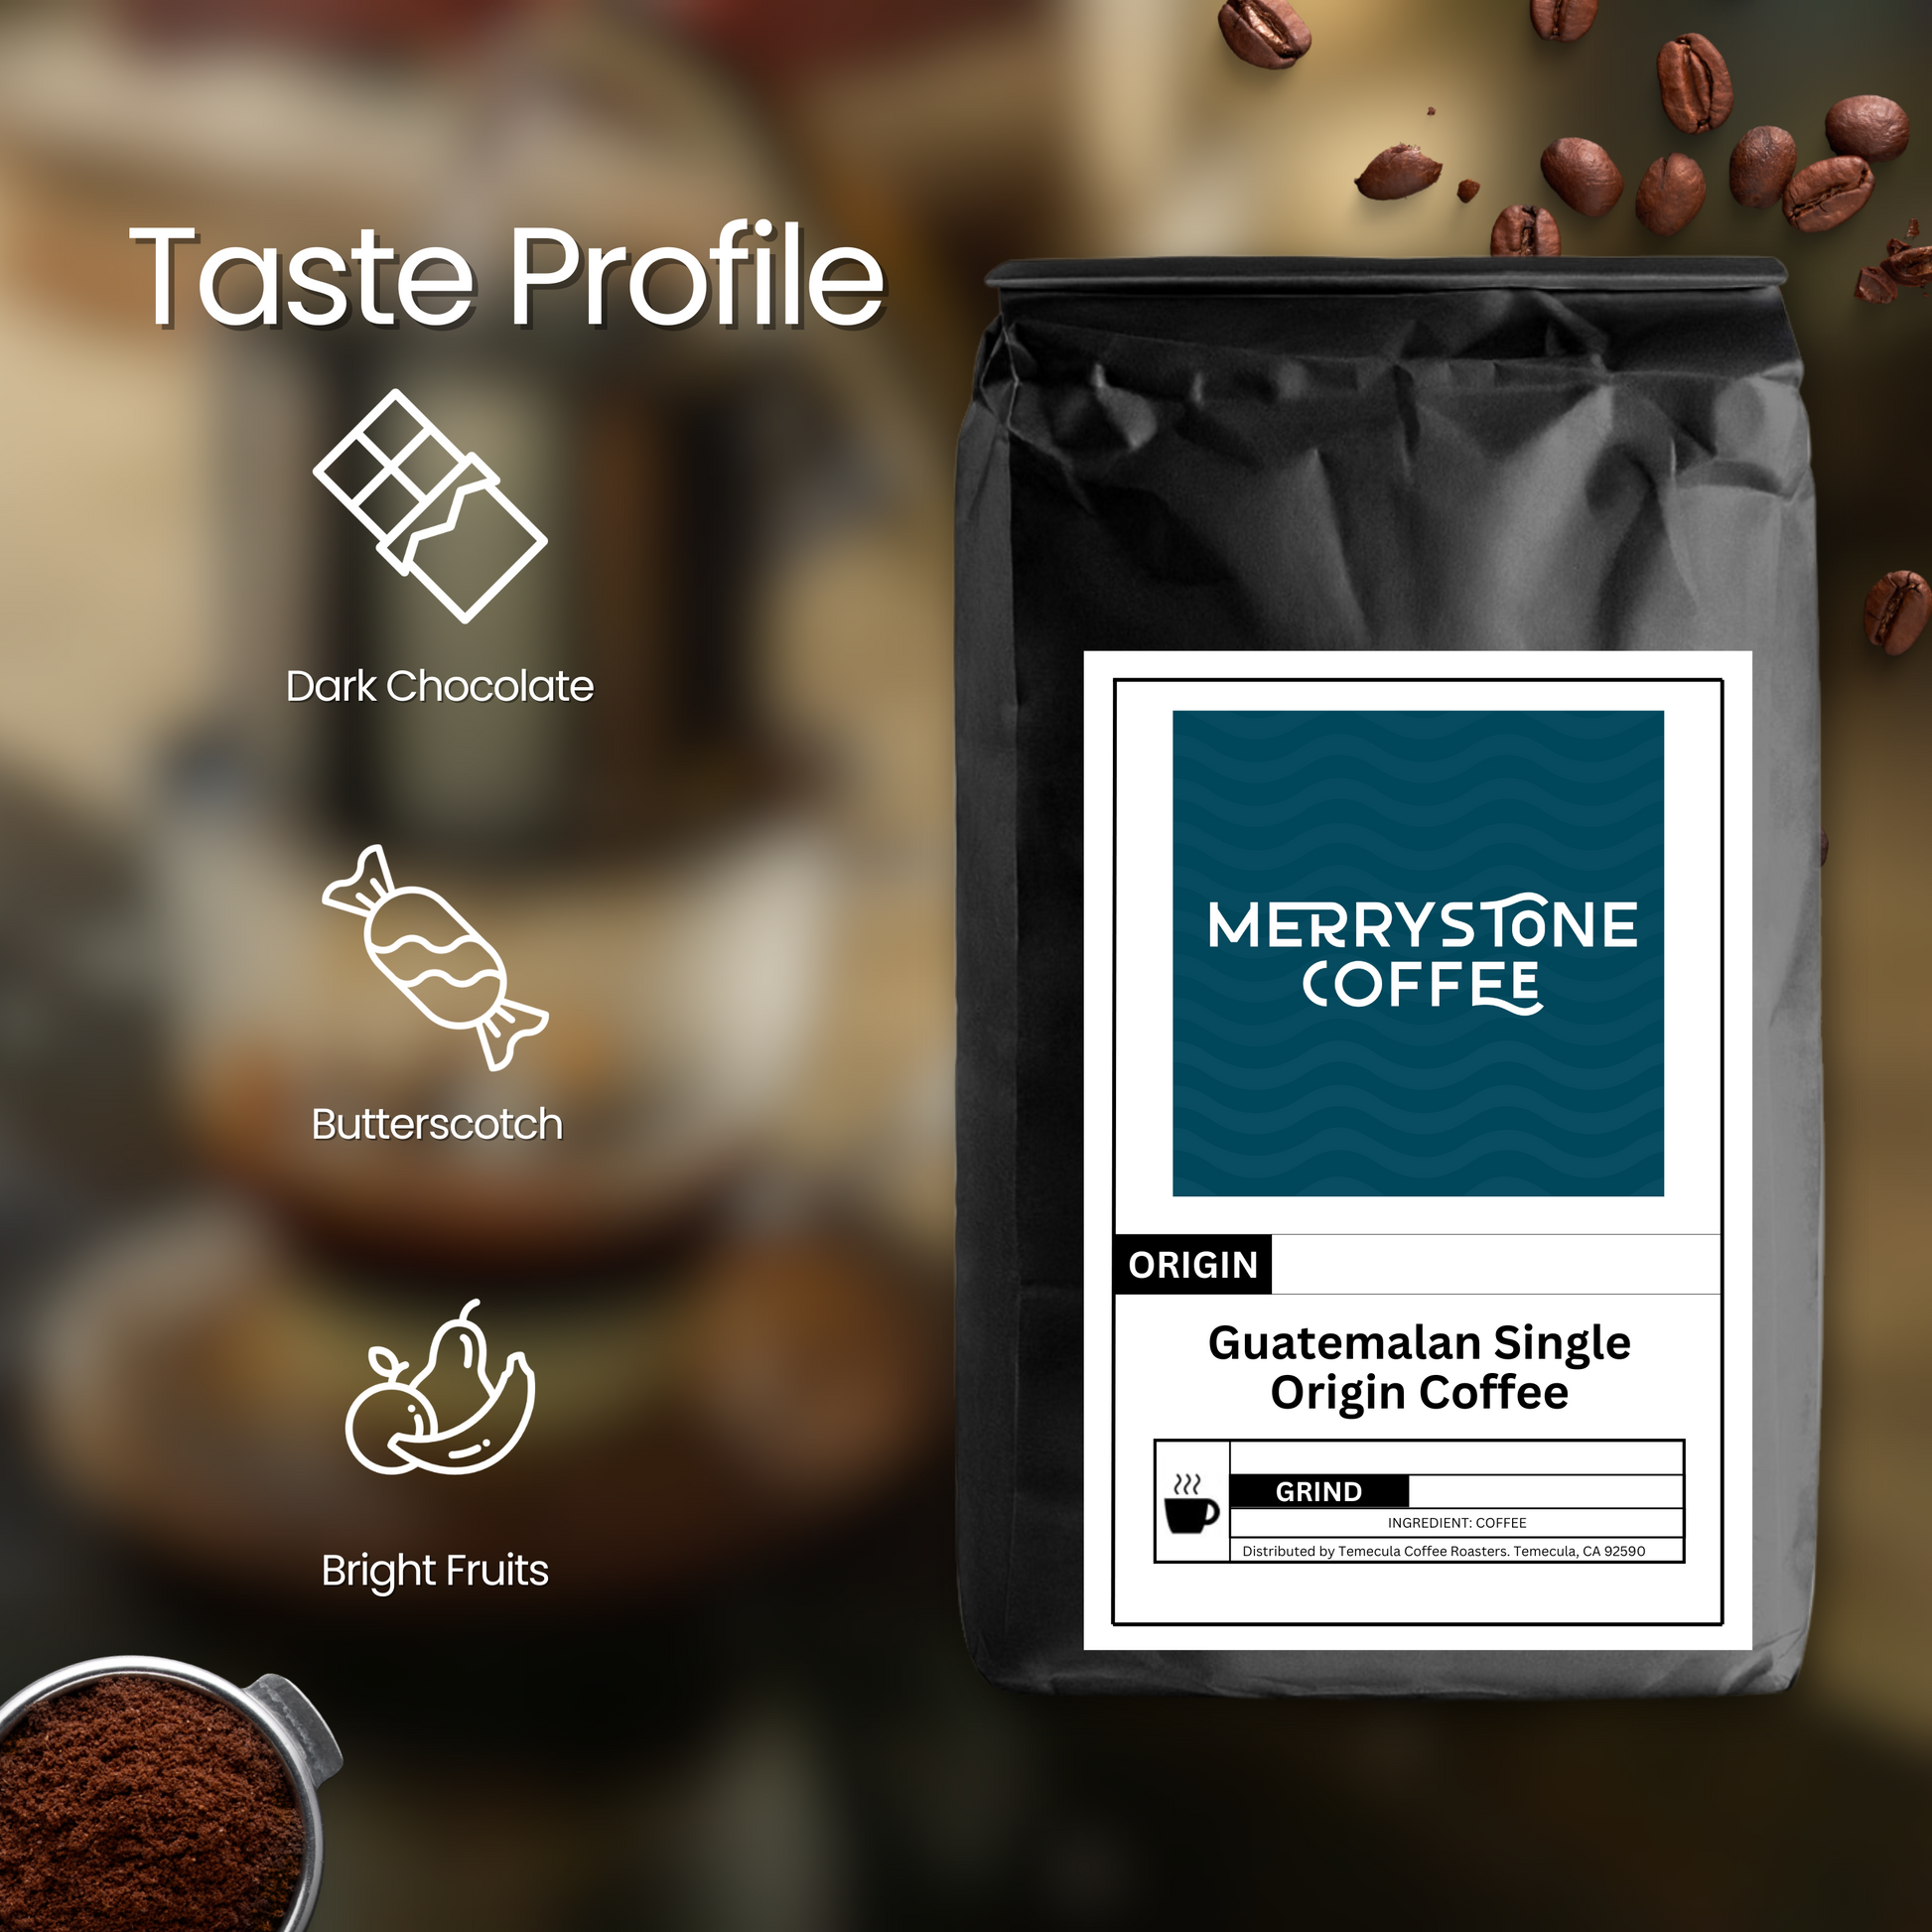 Guatemalan Single Origin Coffee - Merrystone Coffee